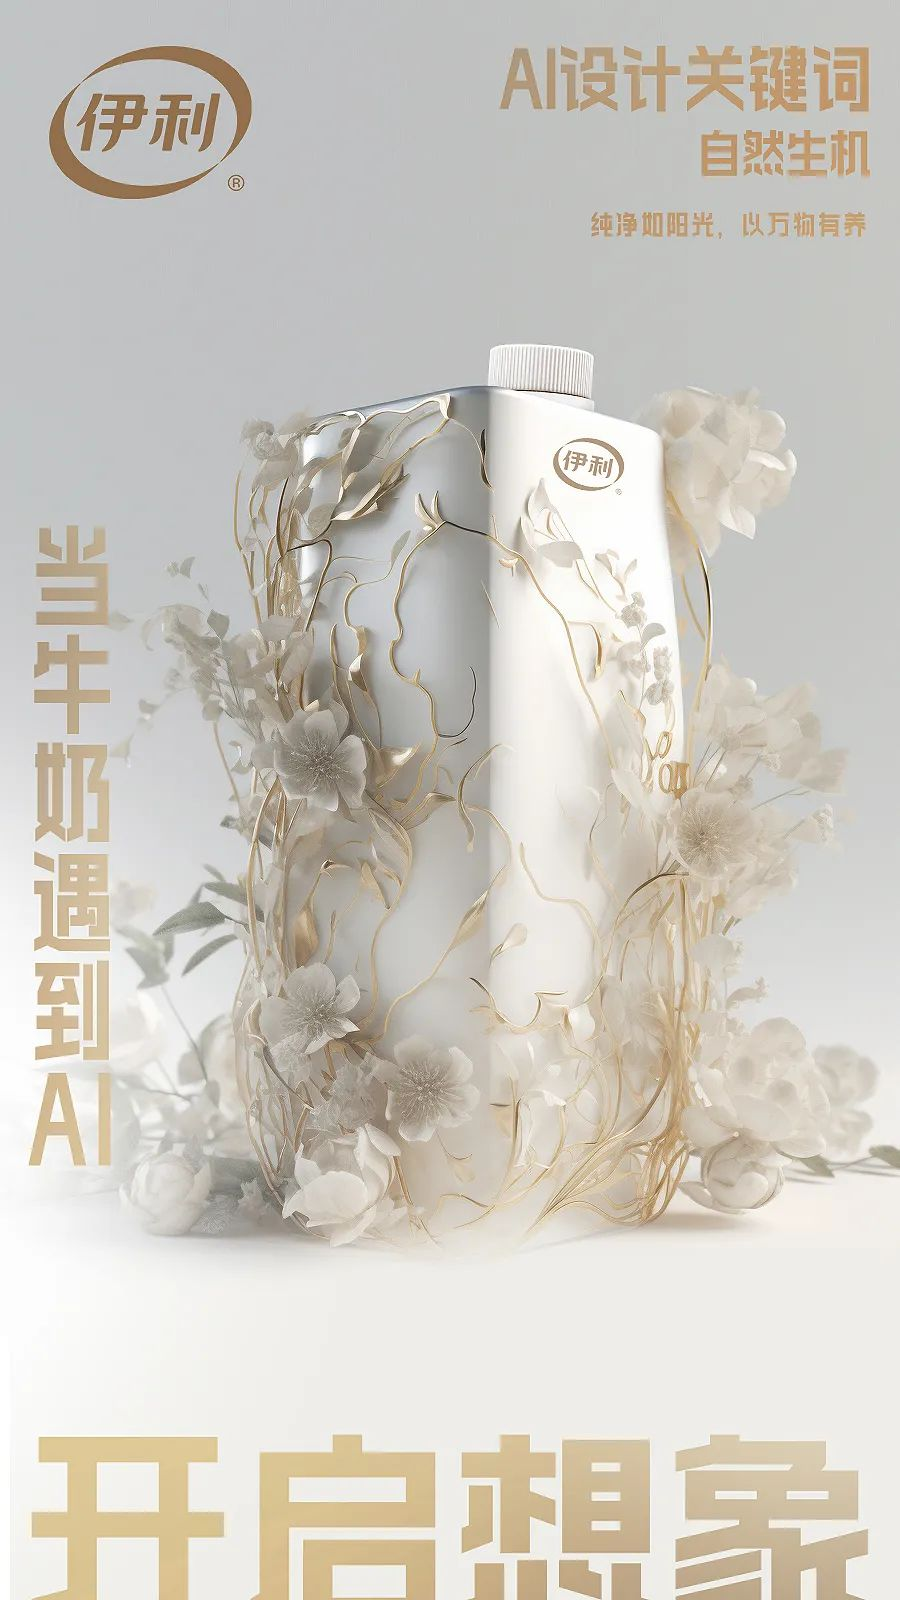 伊利首发AI牛奶包装，会颠覆包装设计吗？